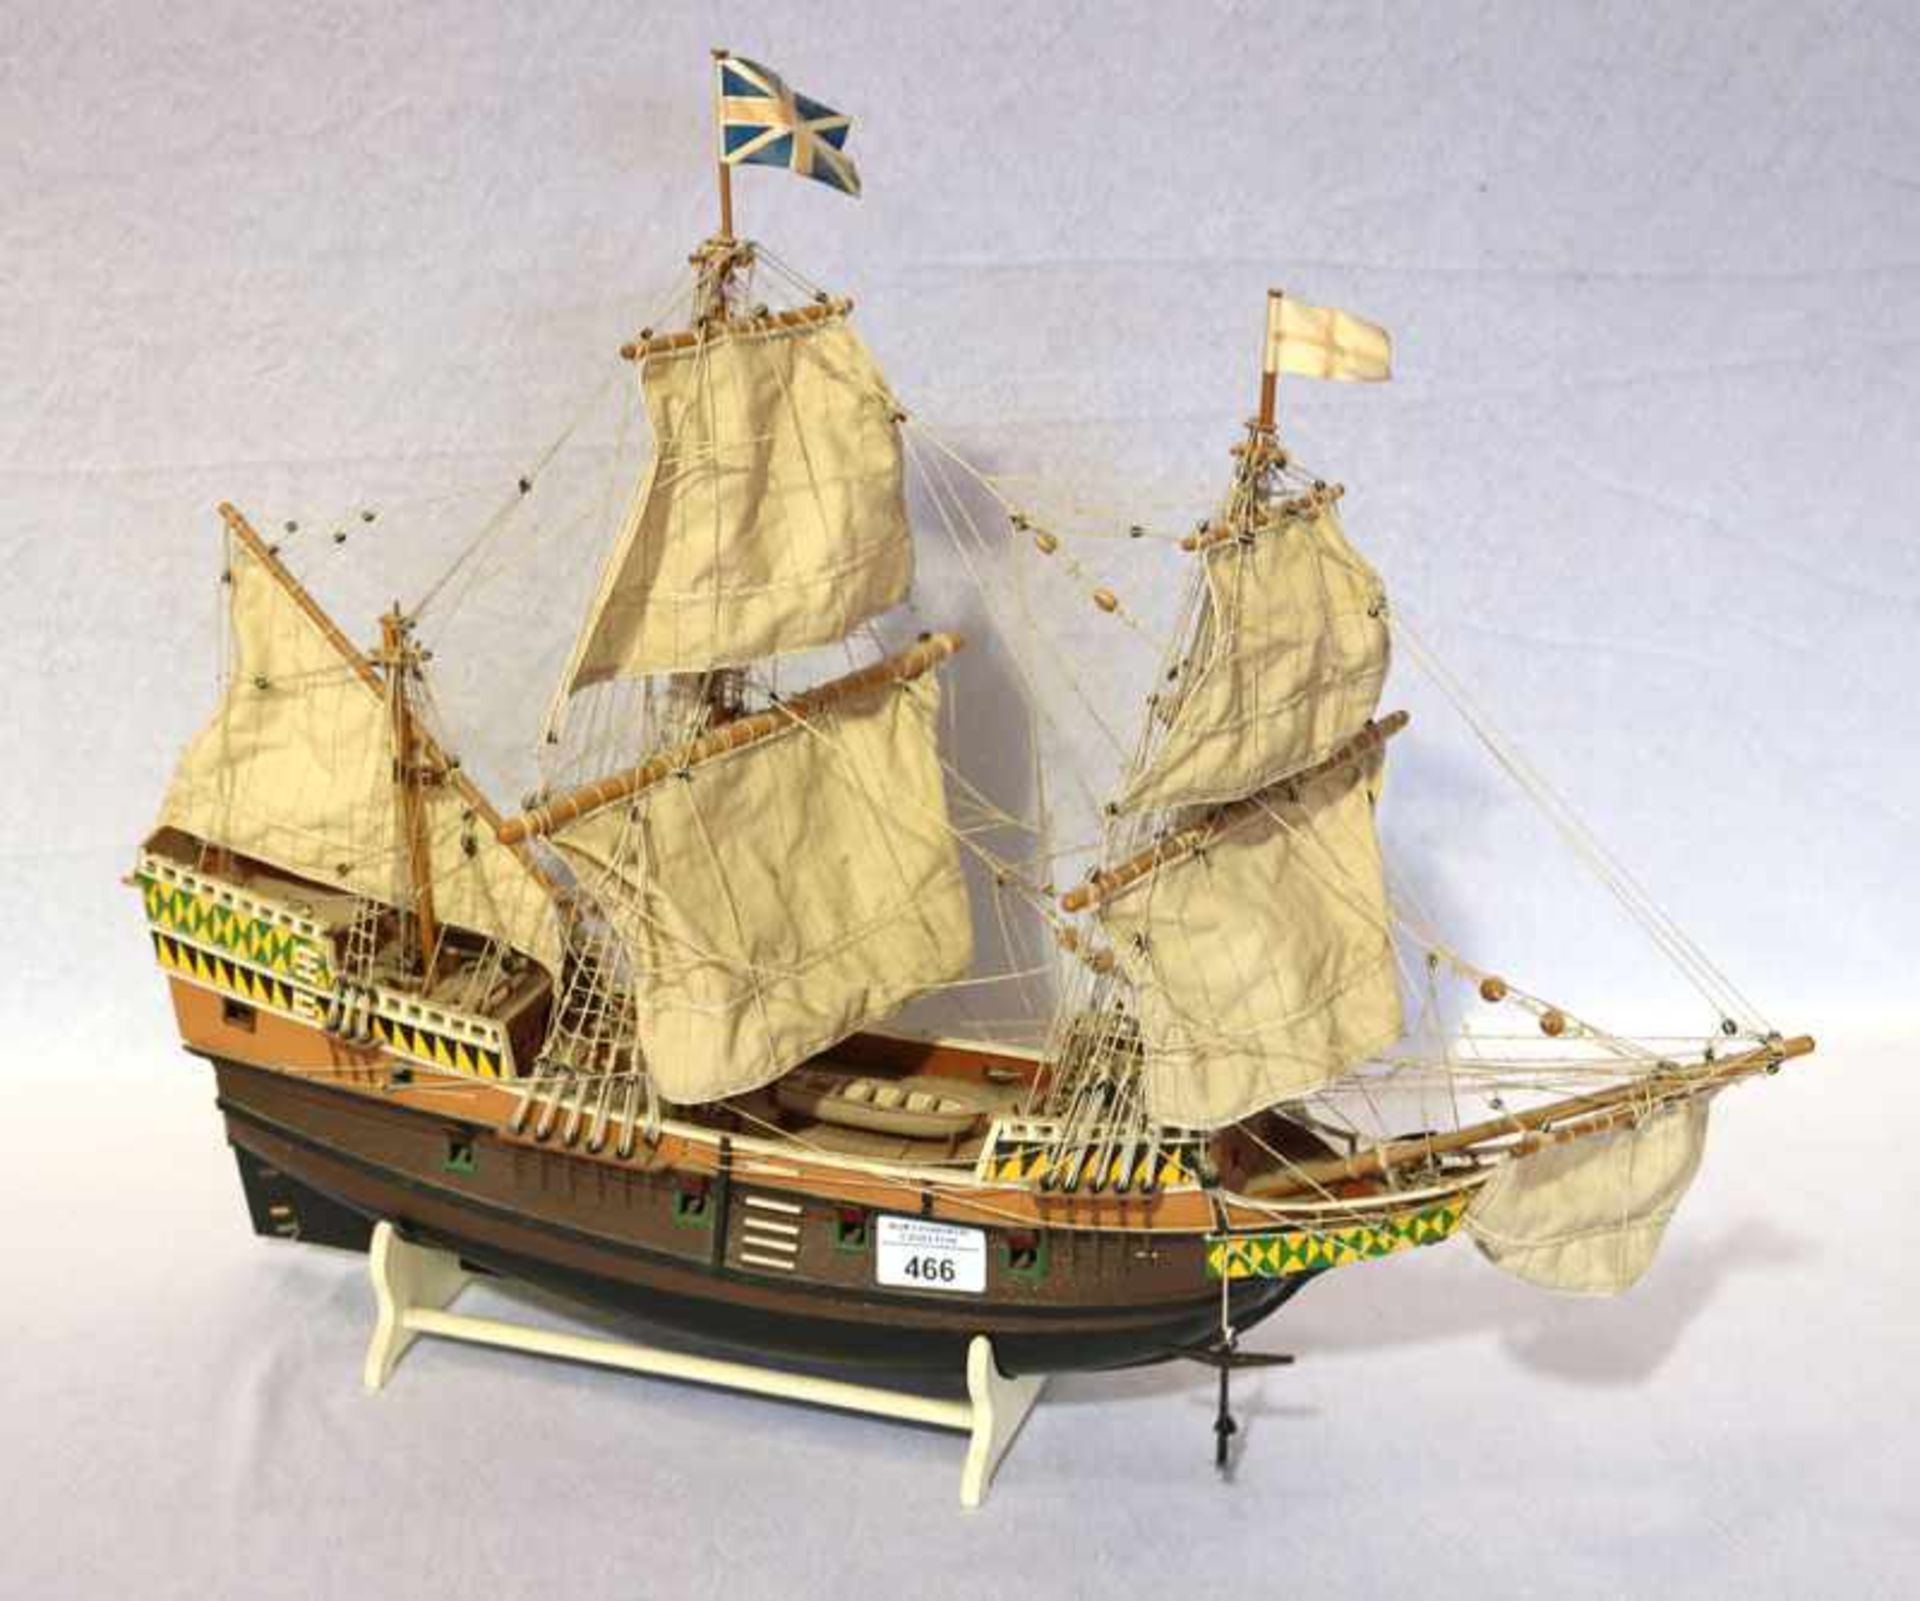 Holz Modellschiff mit Takelage, H 49 cm, B 65 cm, T 24 cm, Altersspuren